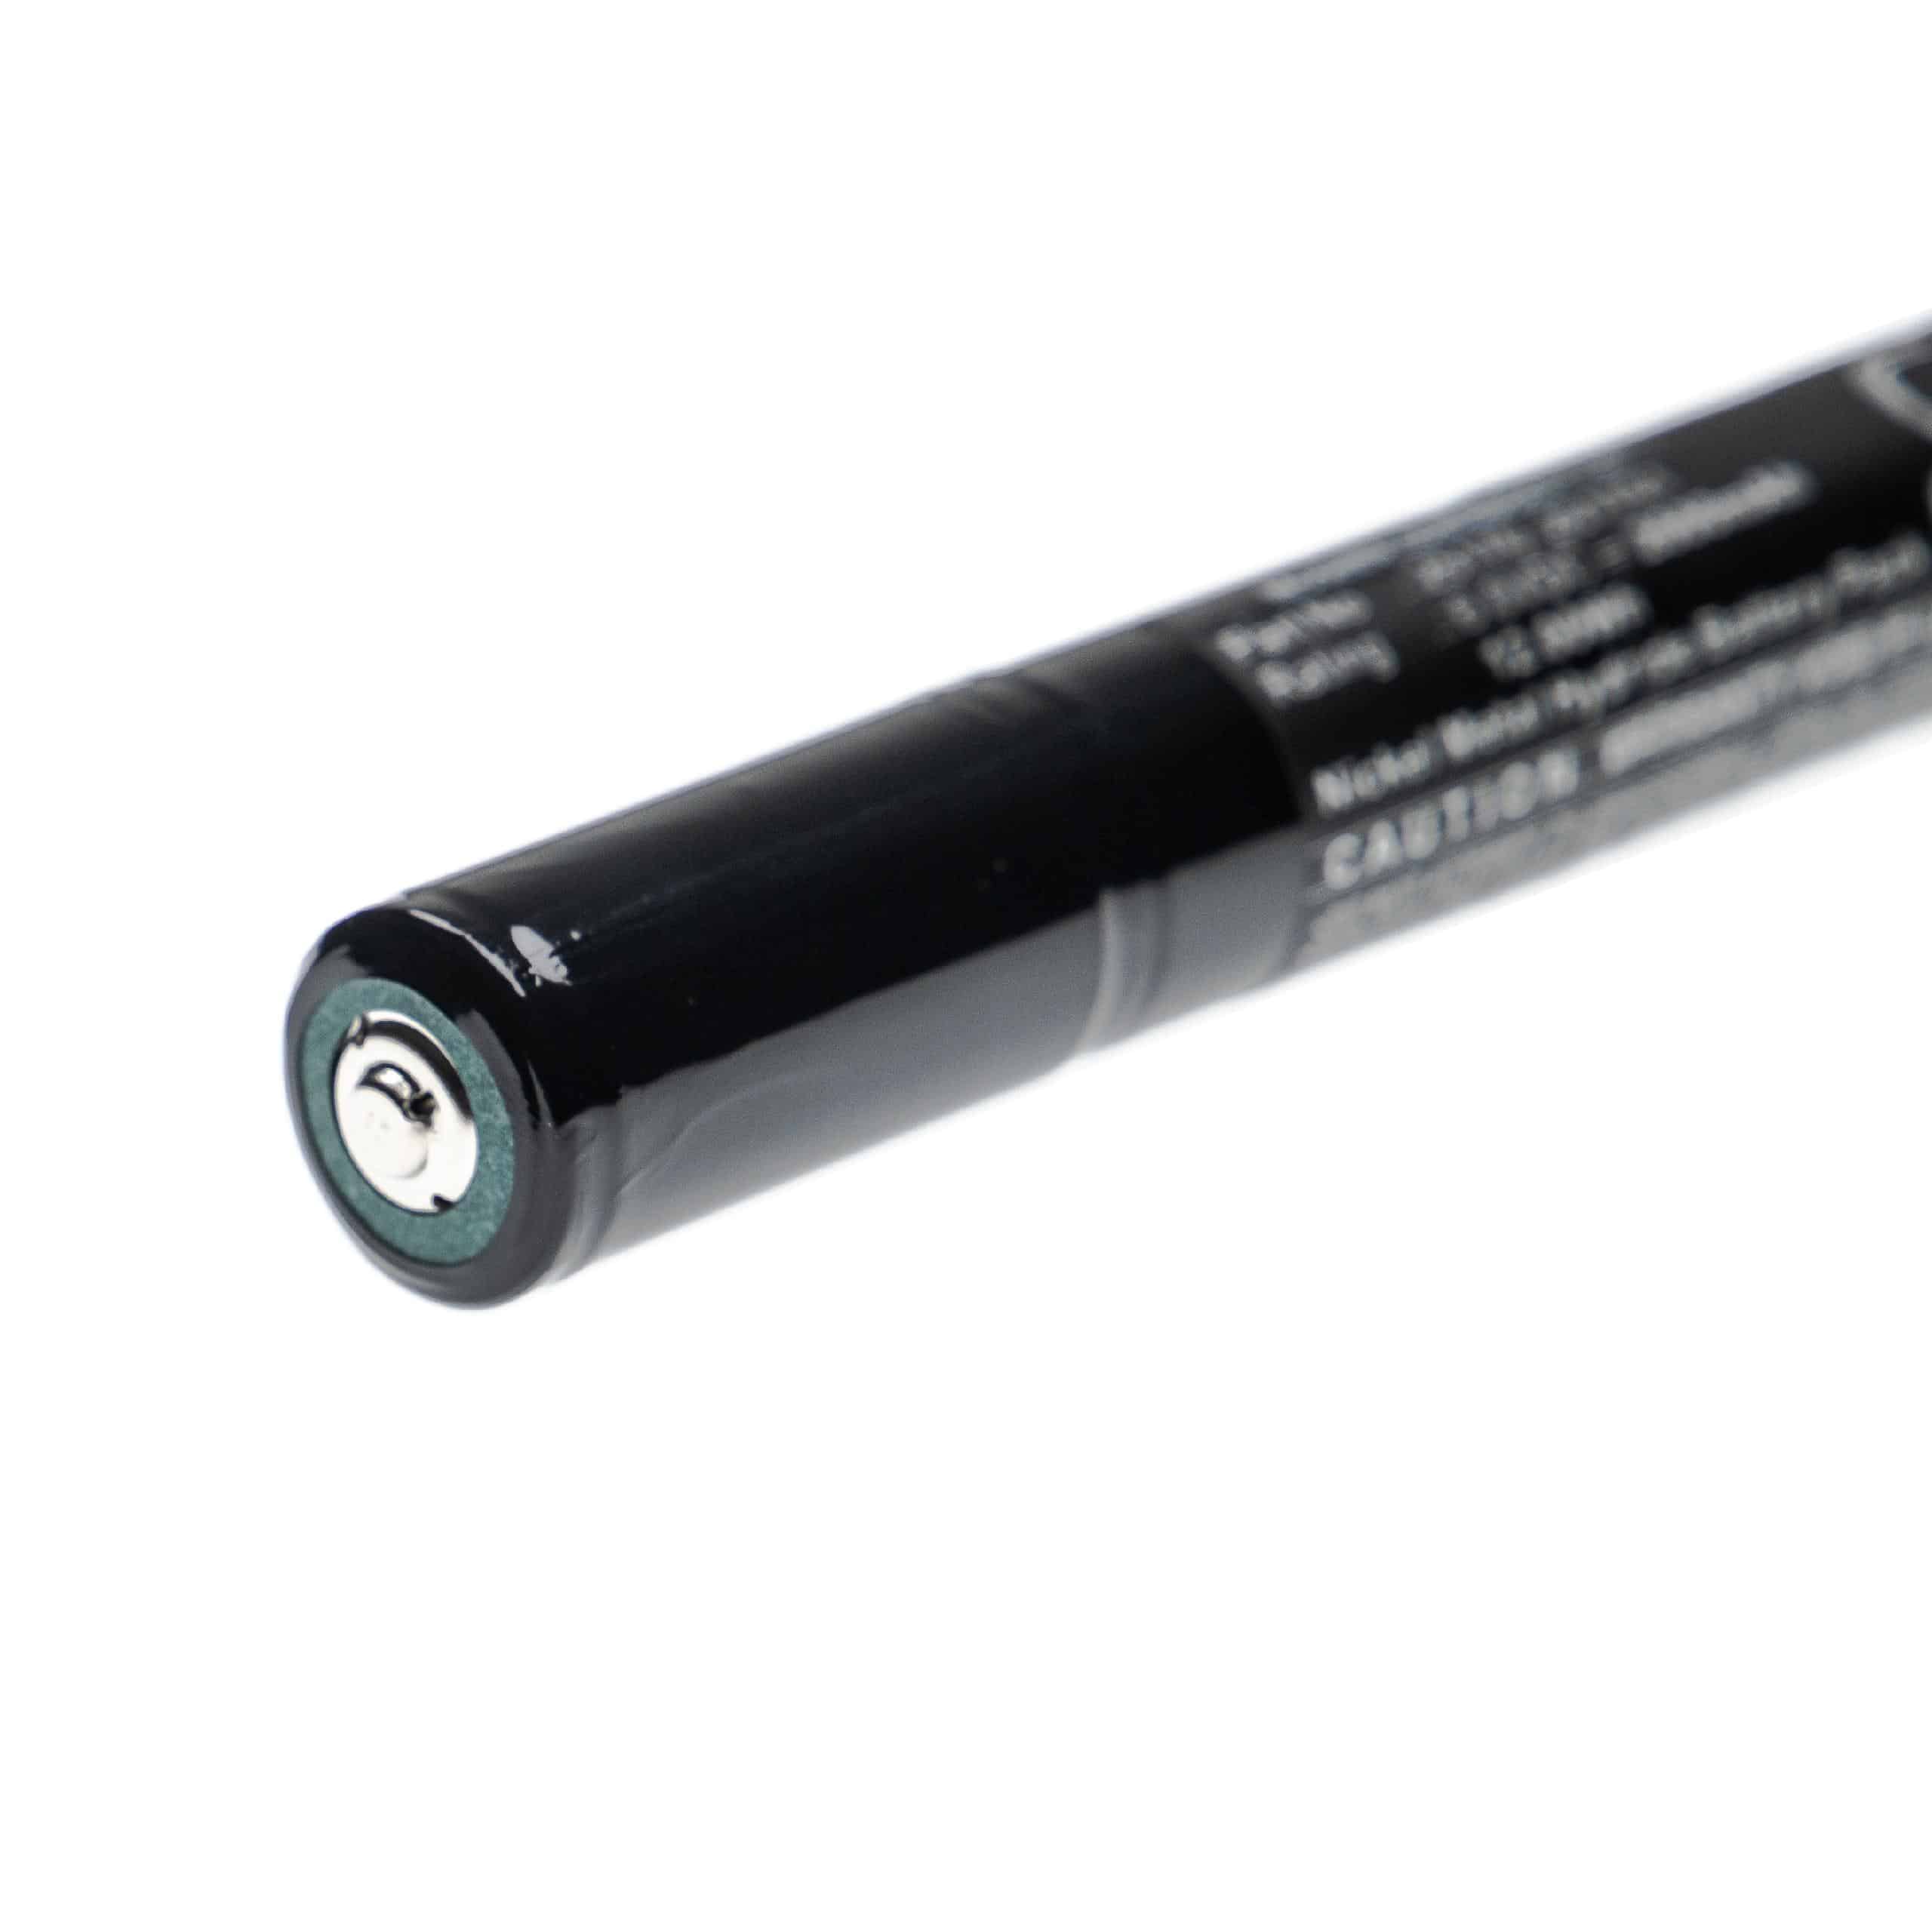 Batterie remplace Streamlight 201701, 25170 pour lampe de poche - 2000mAh 6V NiMH